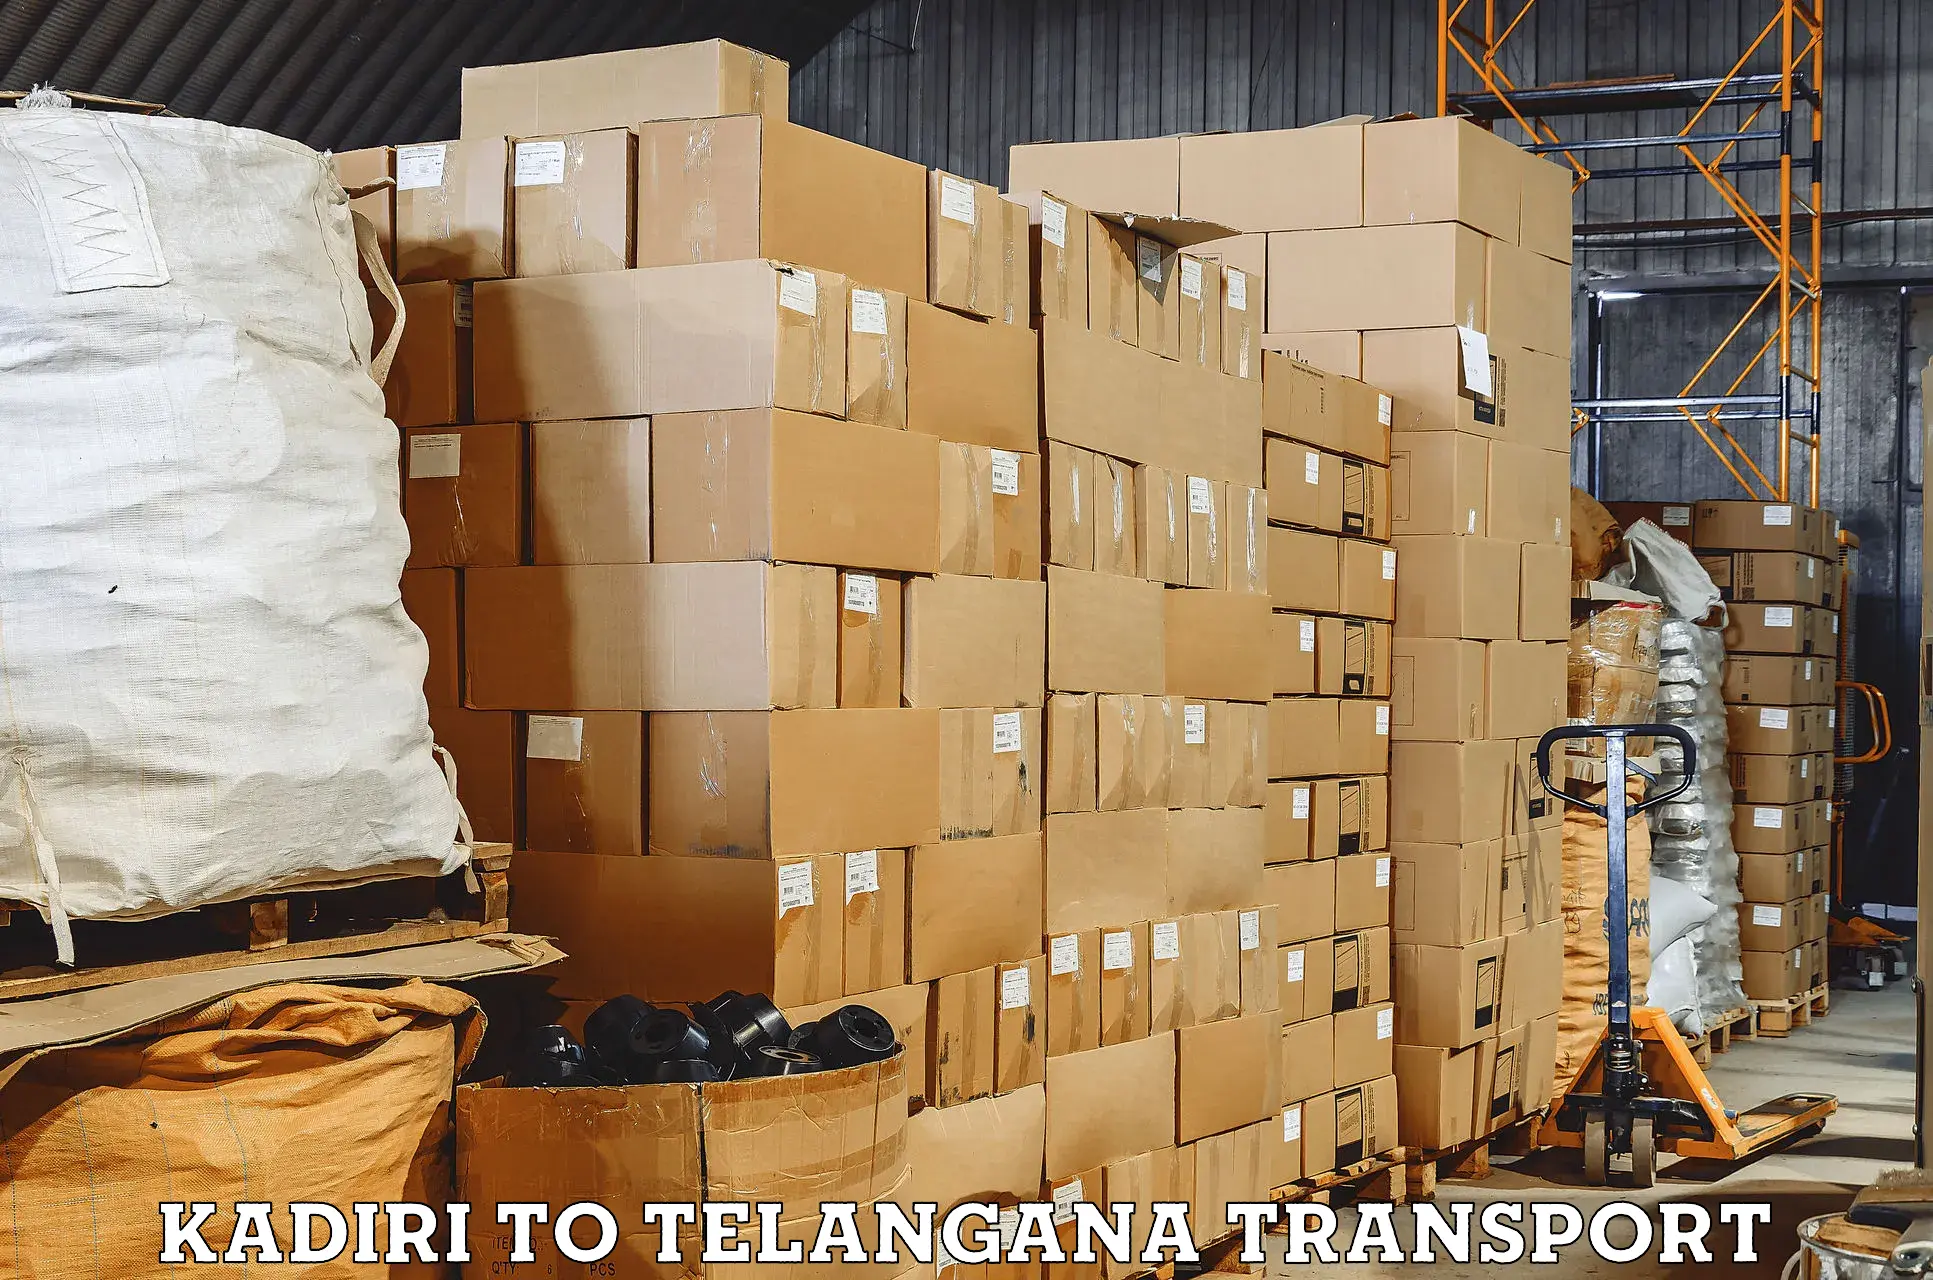 Express transport services Kadiri to Telangana